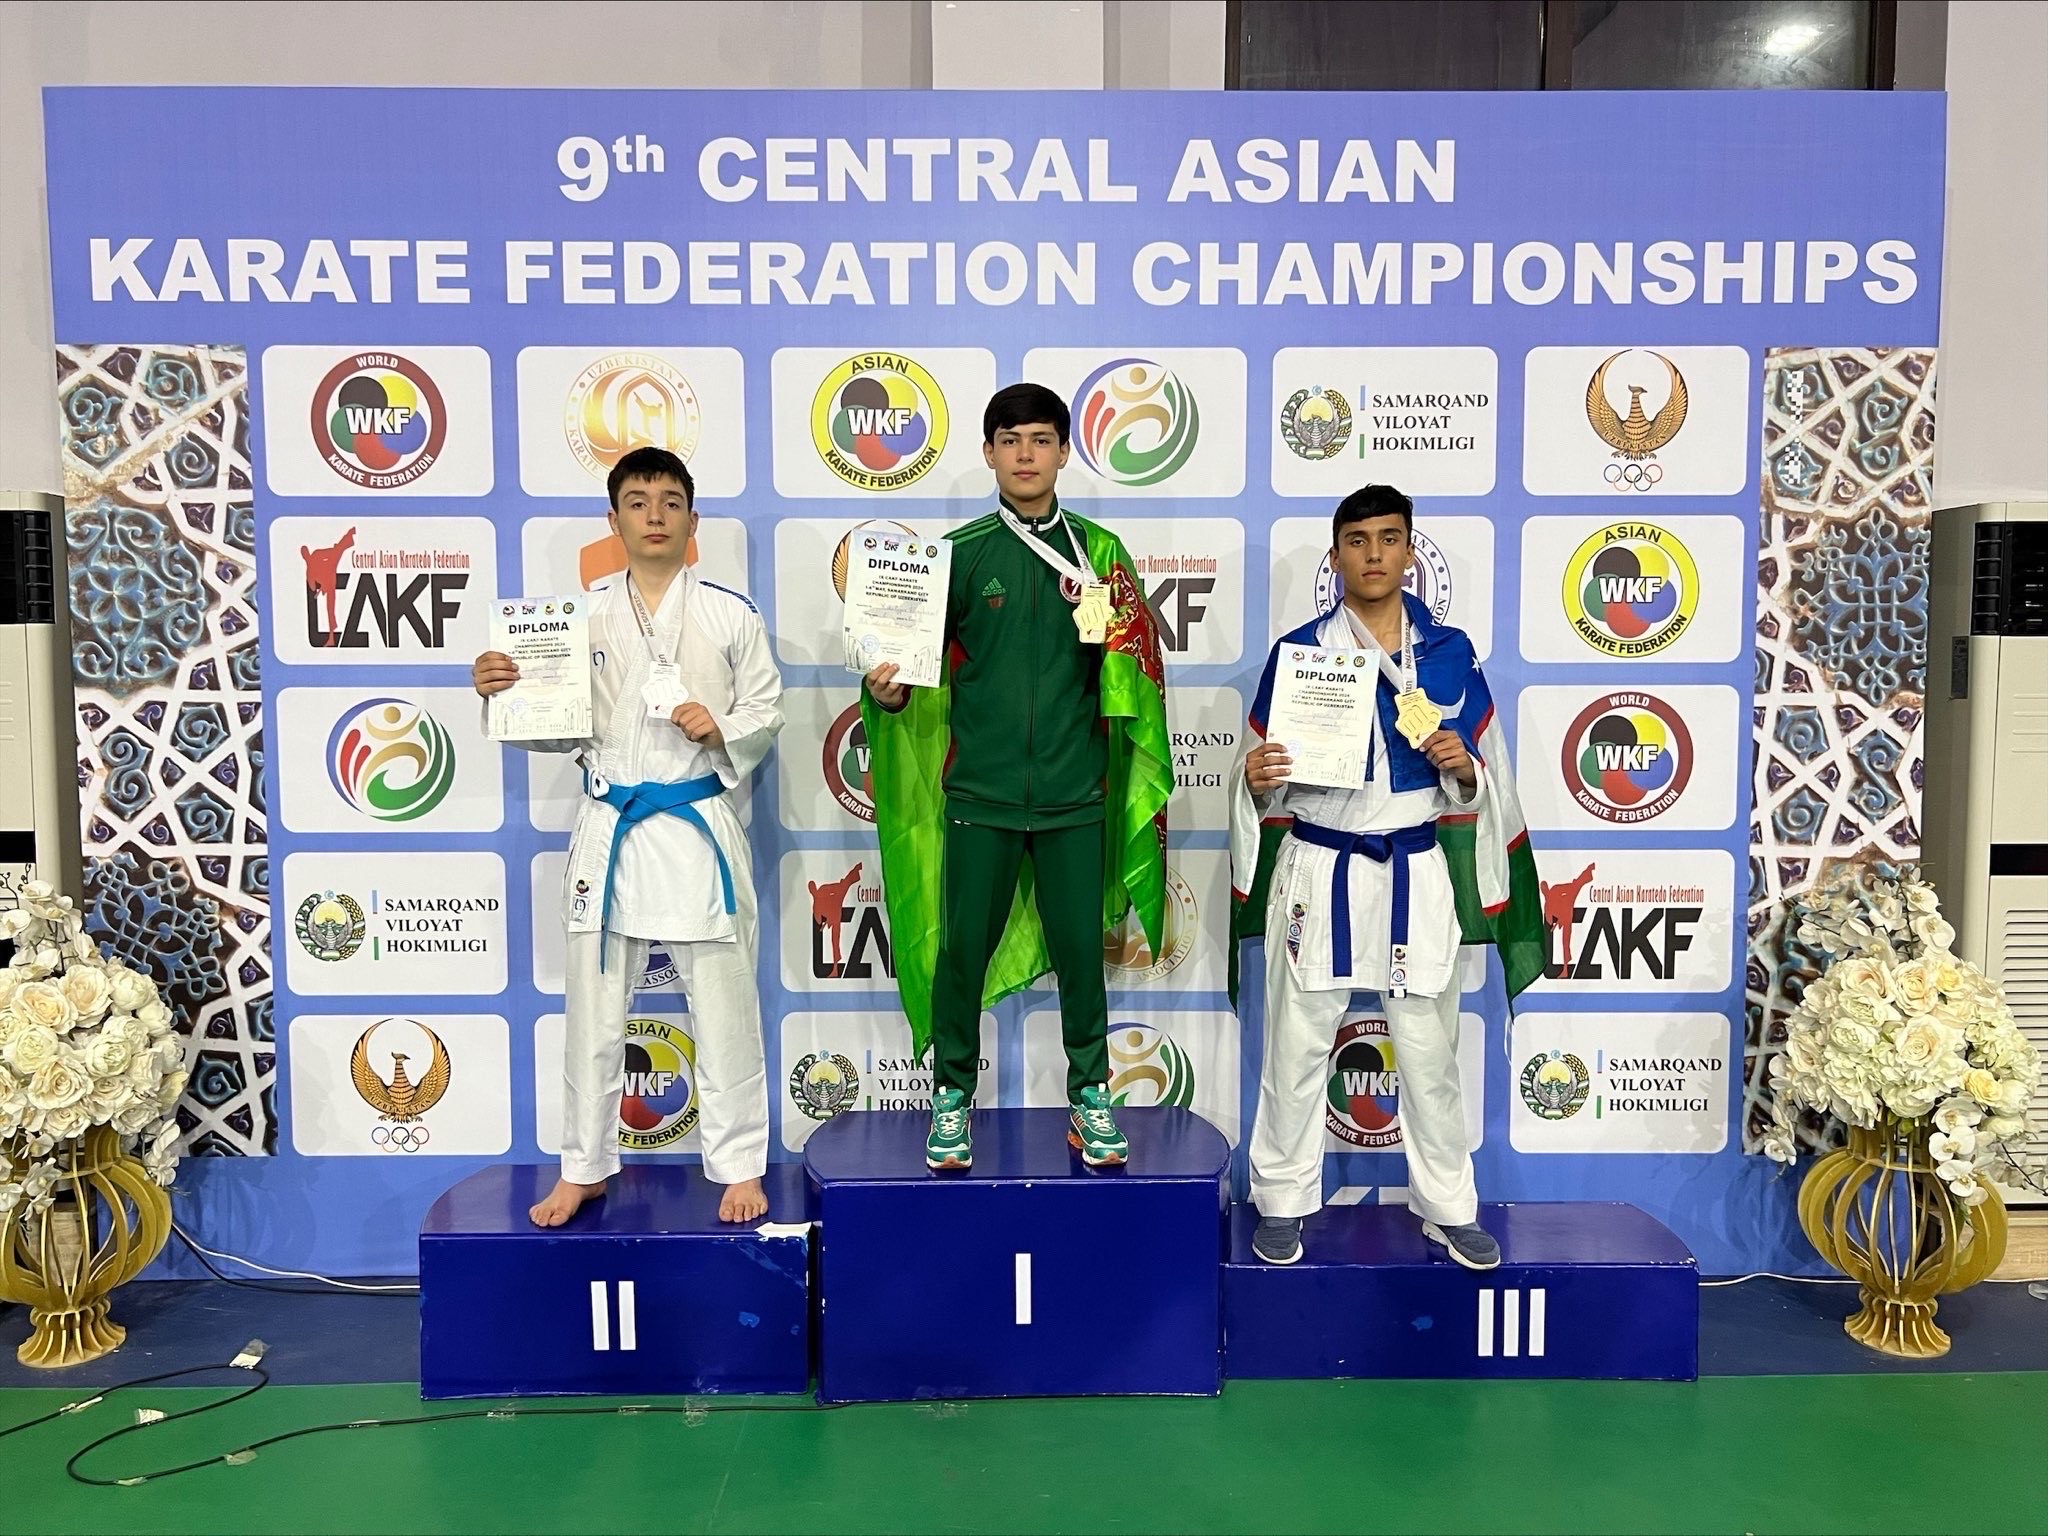 Каратисты Туркменистана завоевали 7 медалей в первый день на чемпионате Центральной Азии в Самарканде